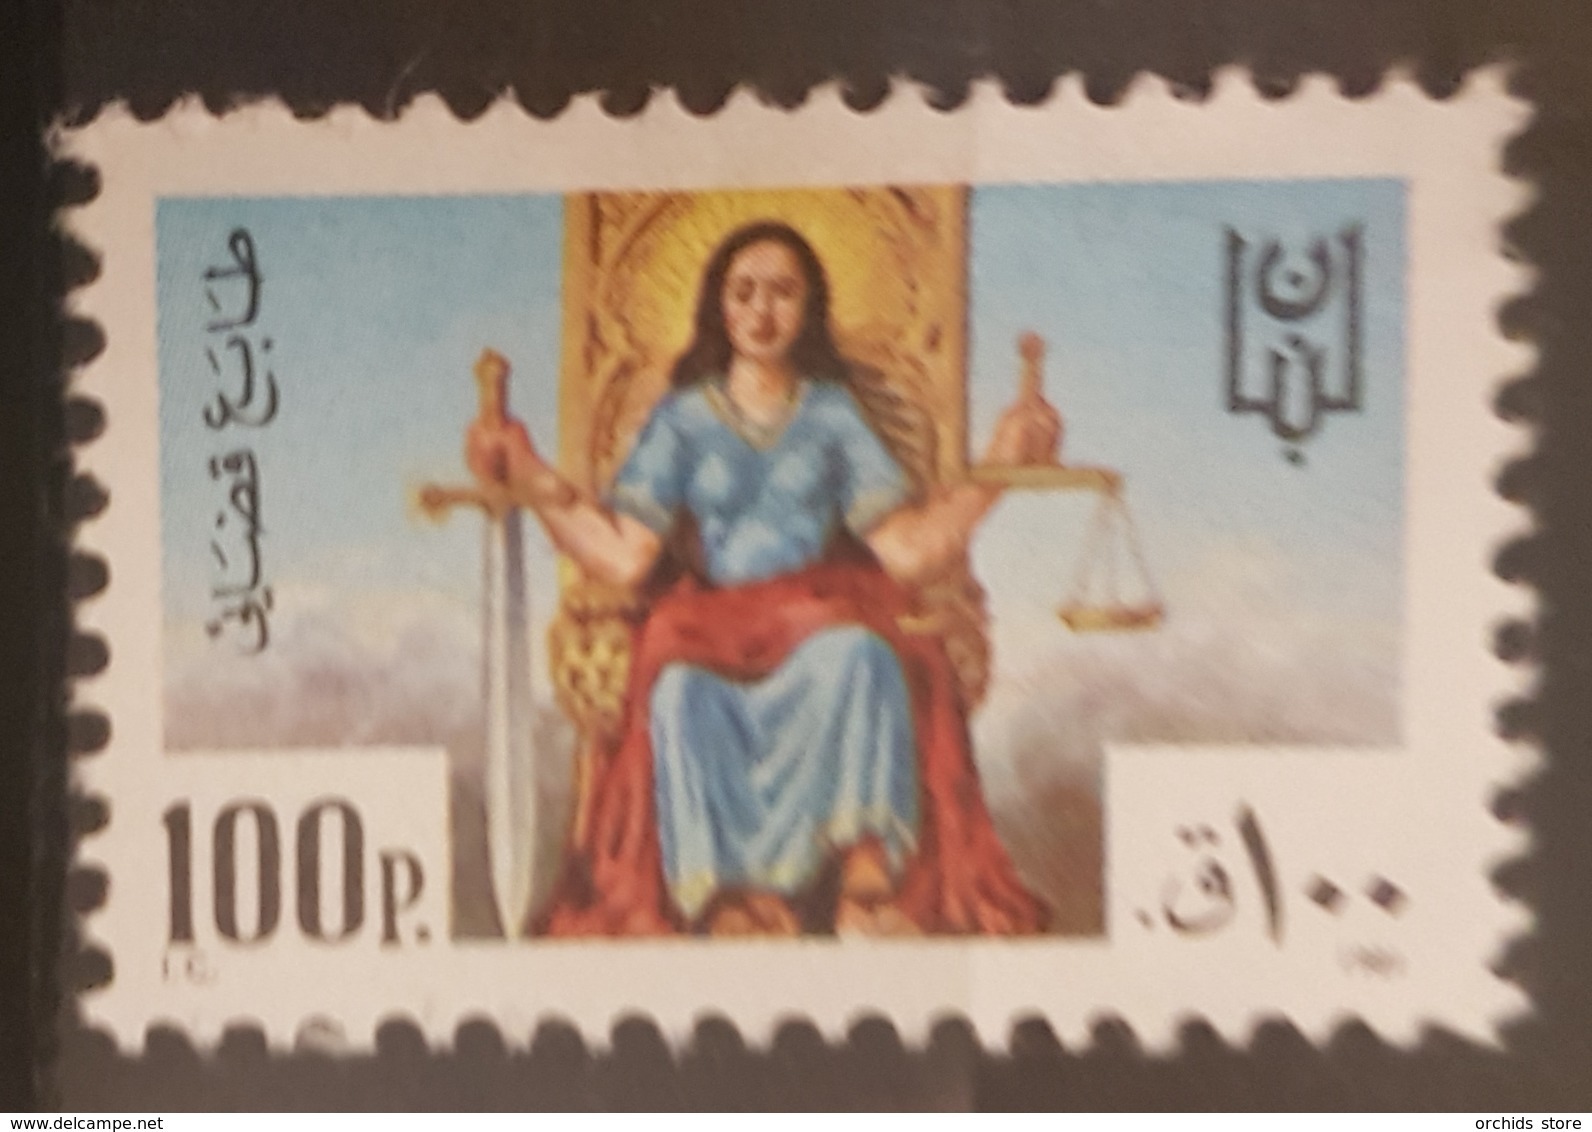 NO11 - Lebanon 1981 Justice Revenue Stamp 100p MNH - Lebanon